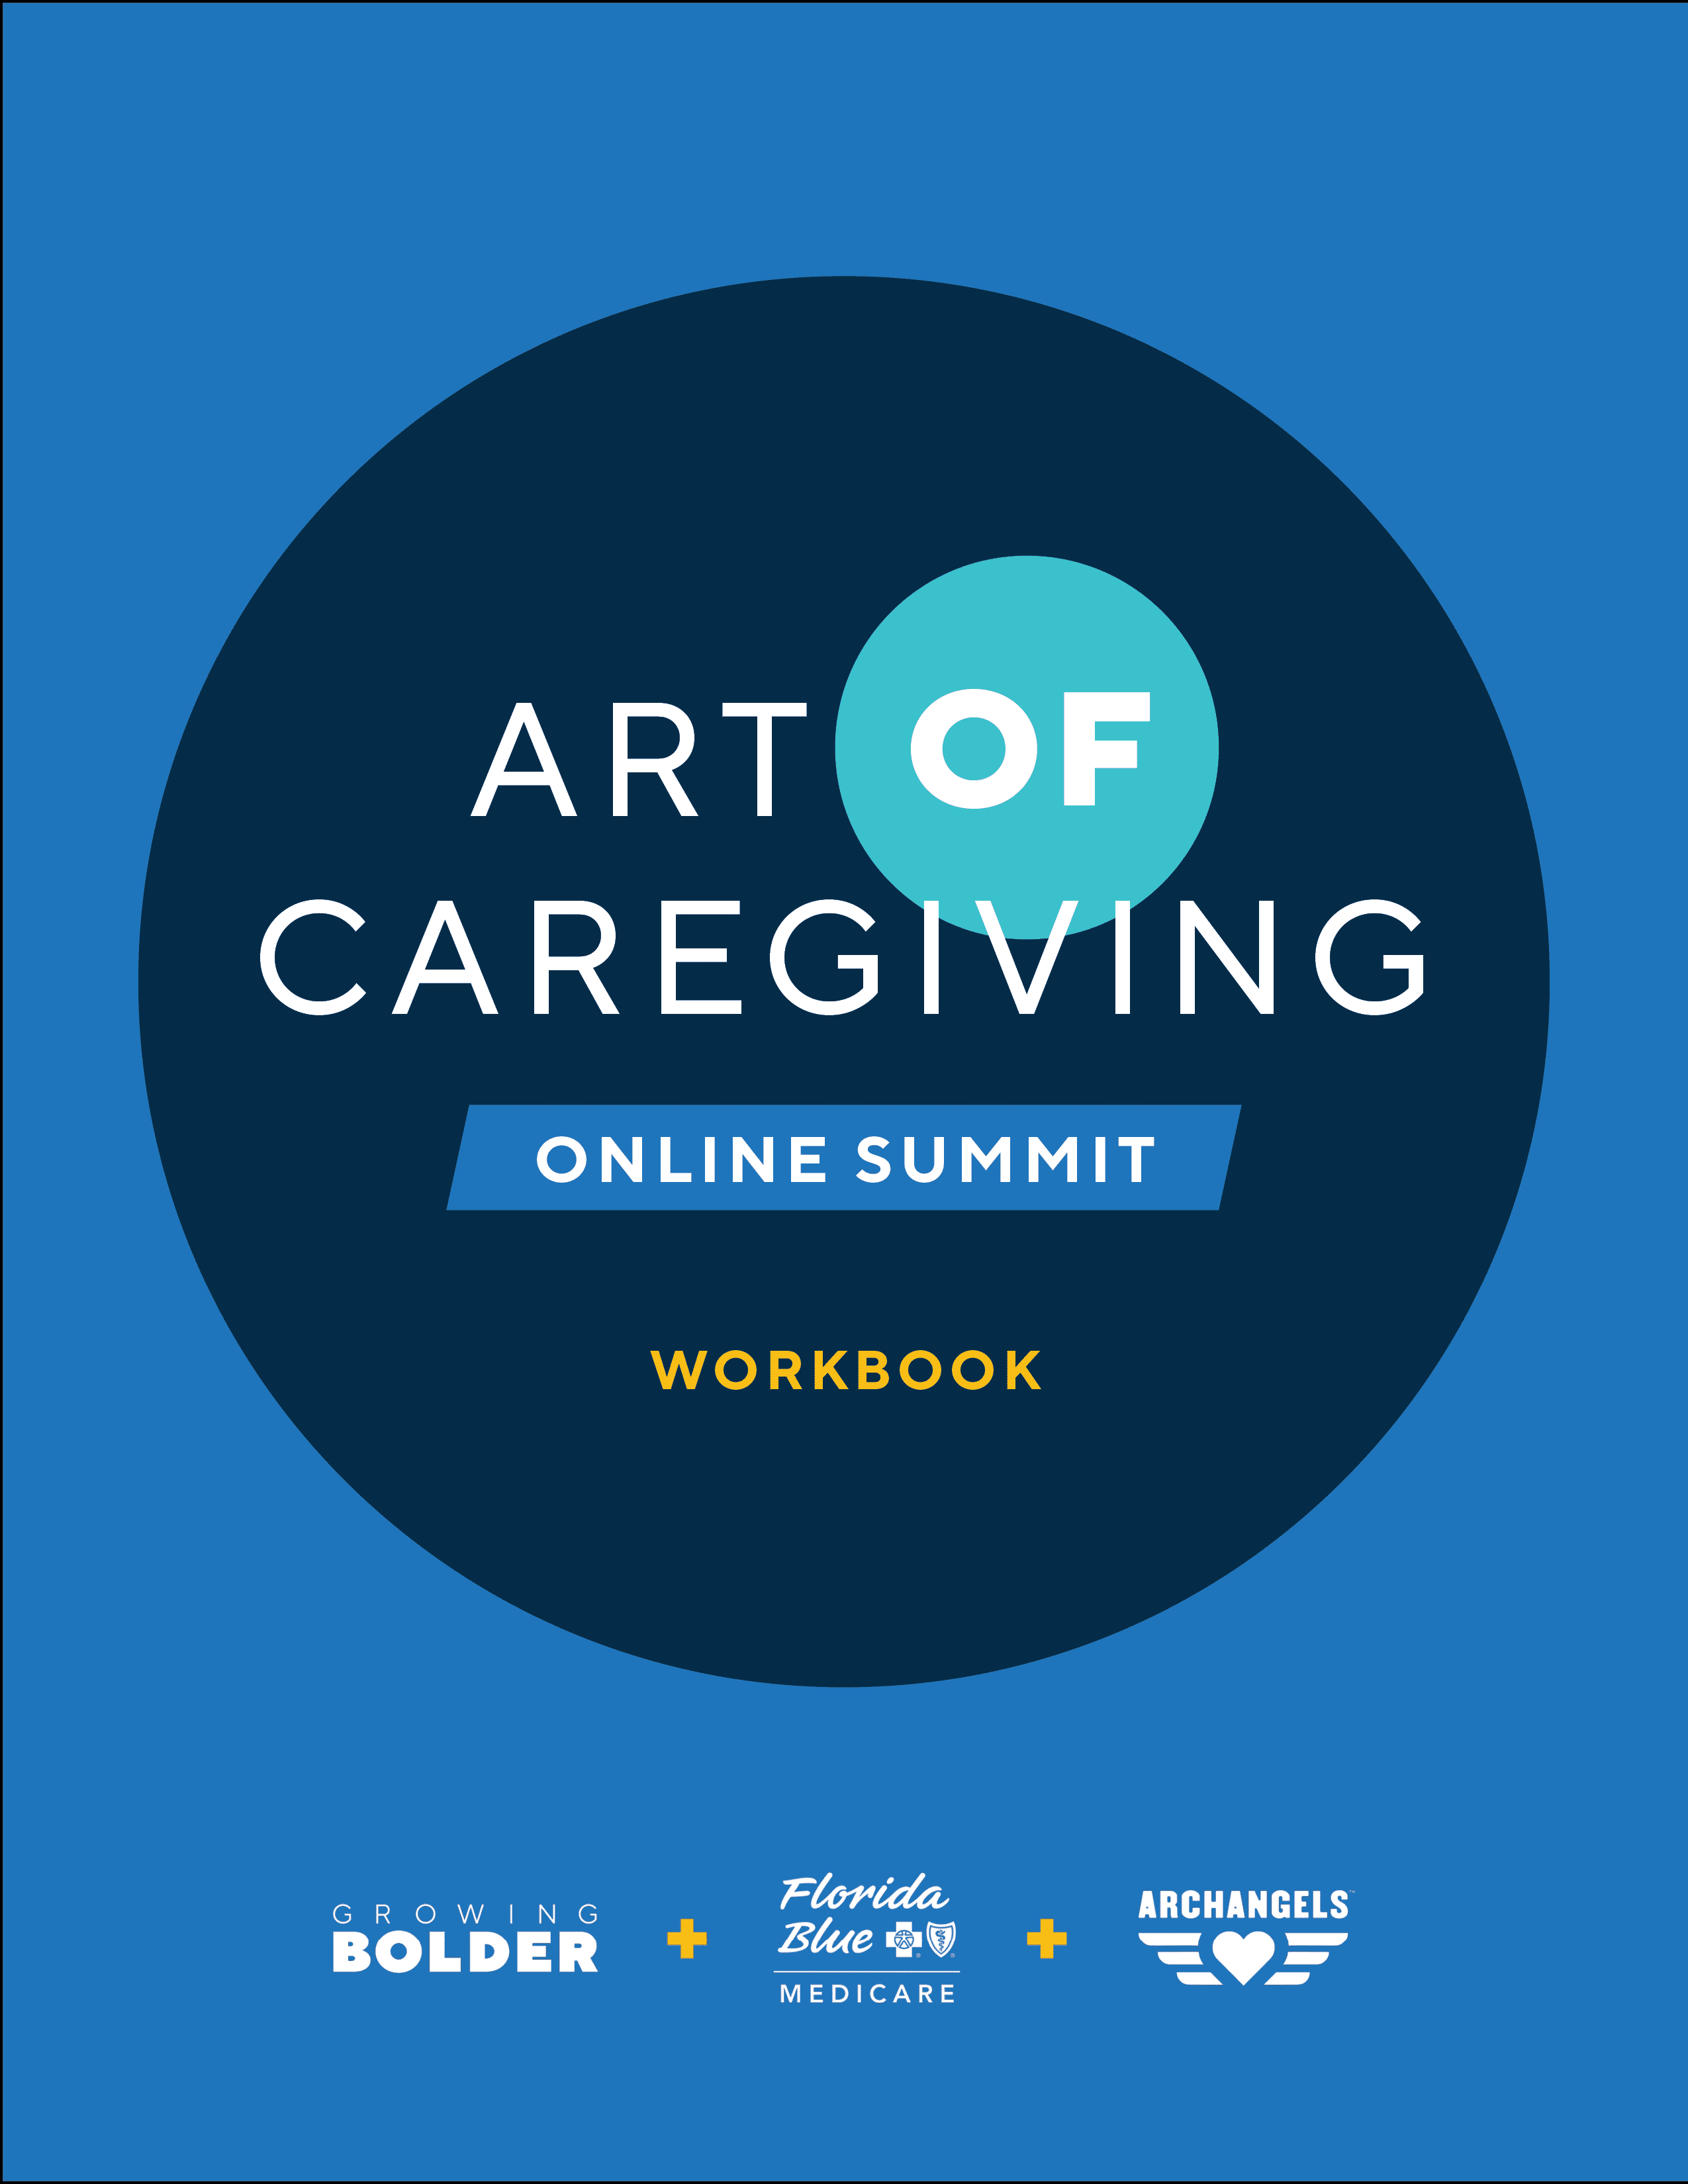 The Art of Caregiving Summit